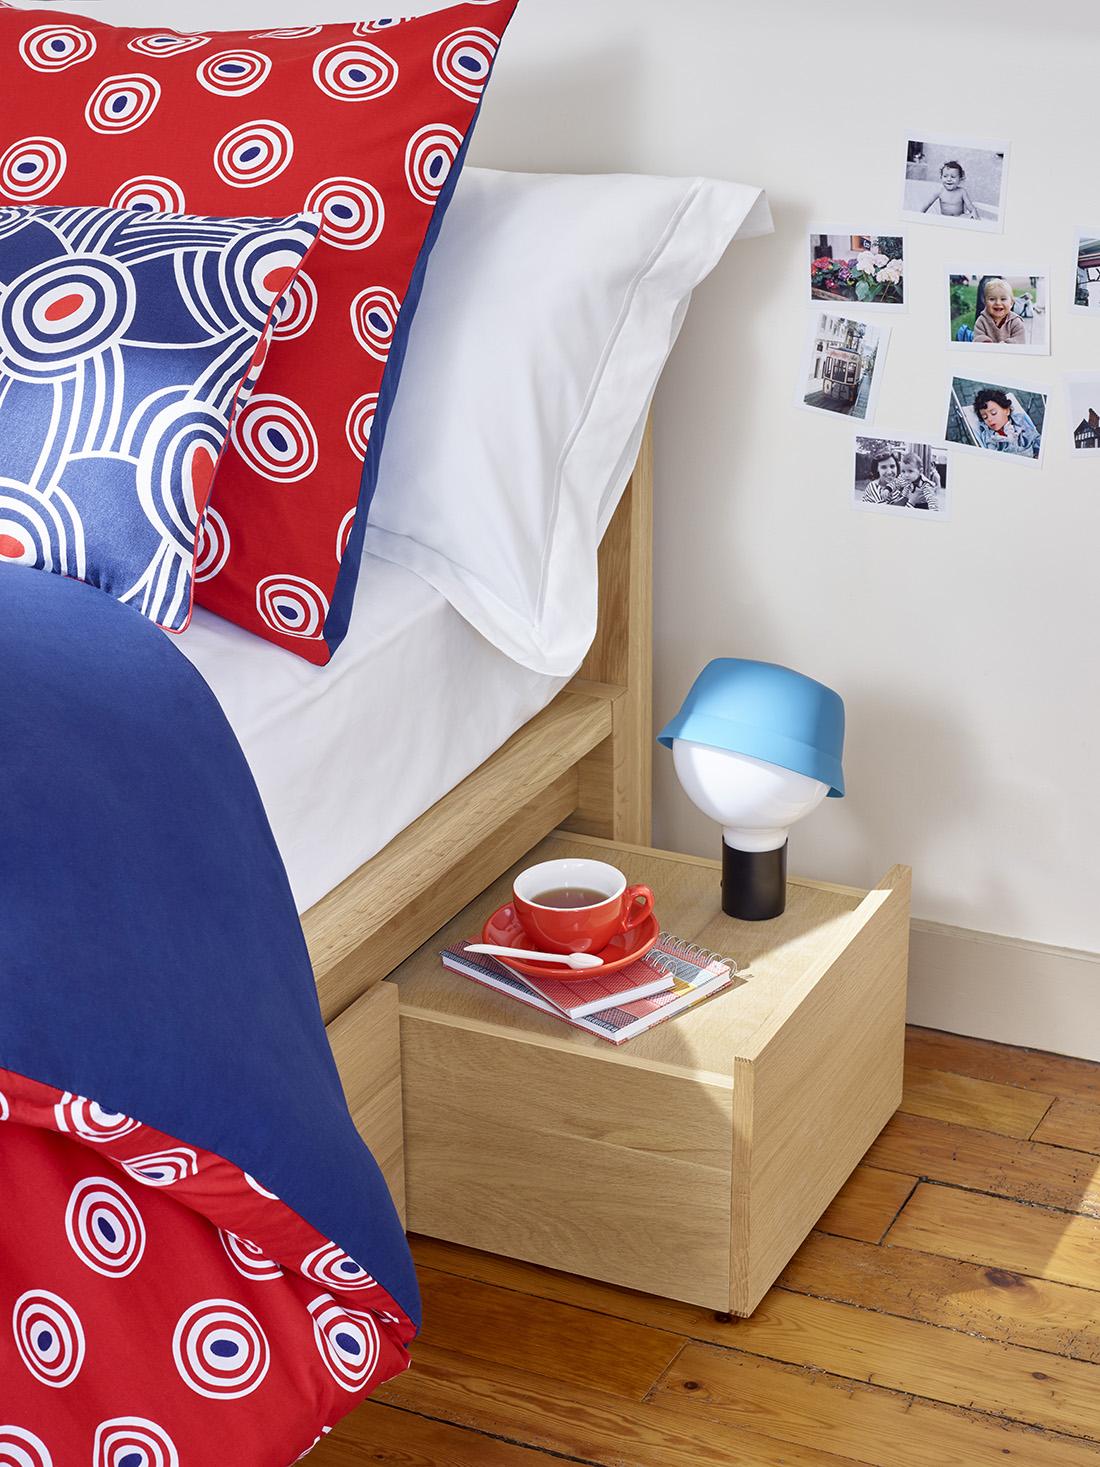 Schlafzimmer mit blau-weiß-roten Details #maritim #skandinavischesdesign ©Habitat